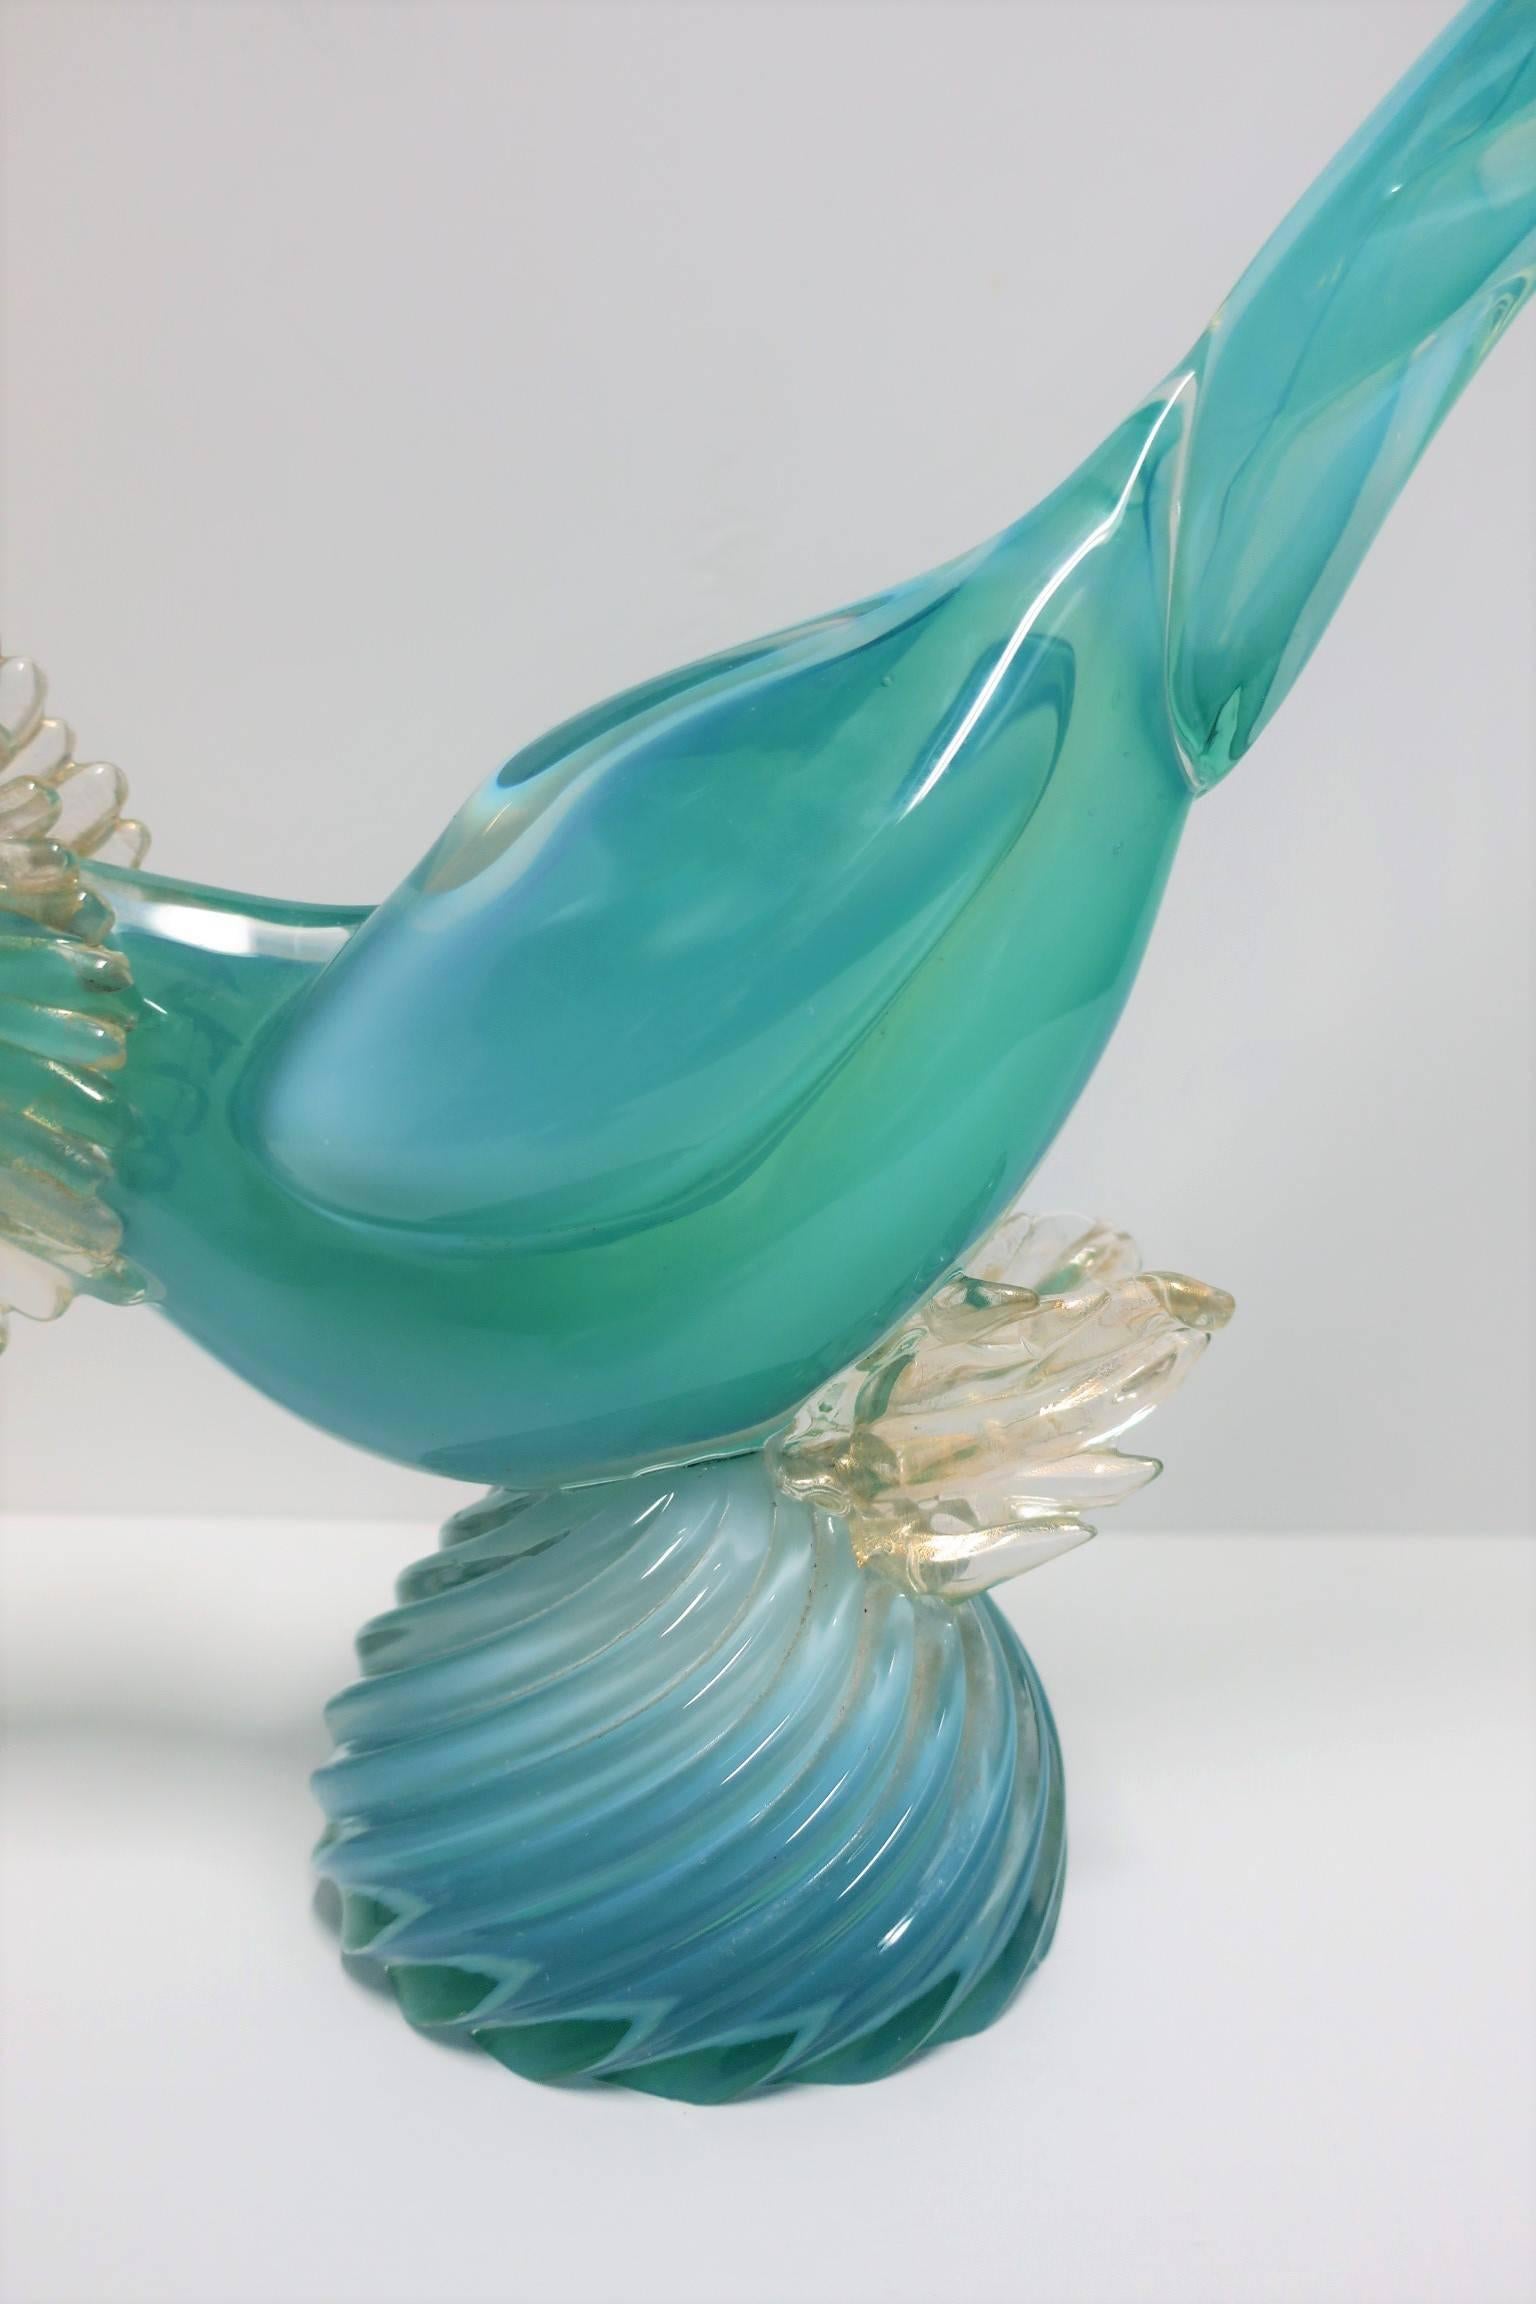 Modern Italian Azure Blue and Gold Murano Art Glass Bird Sculpture 2